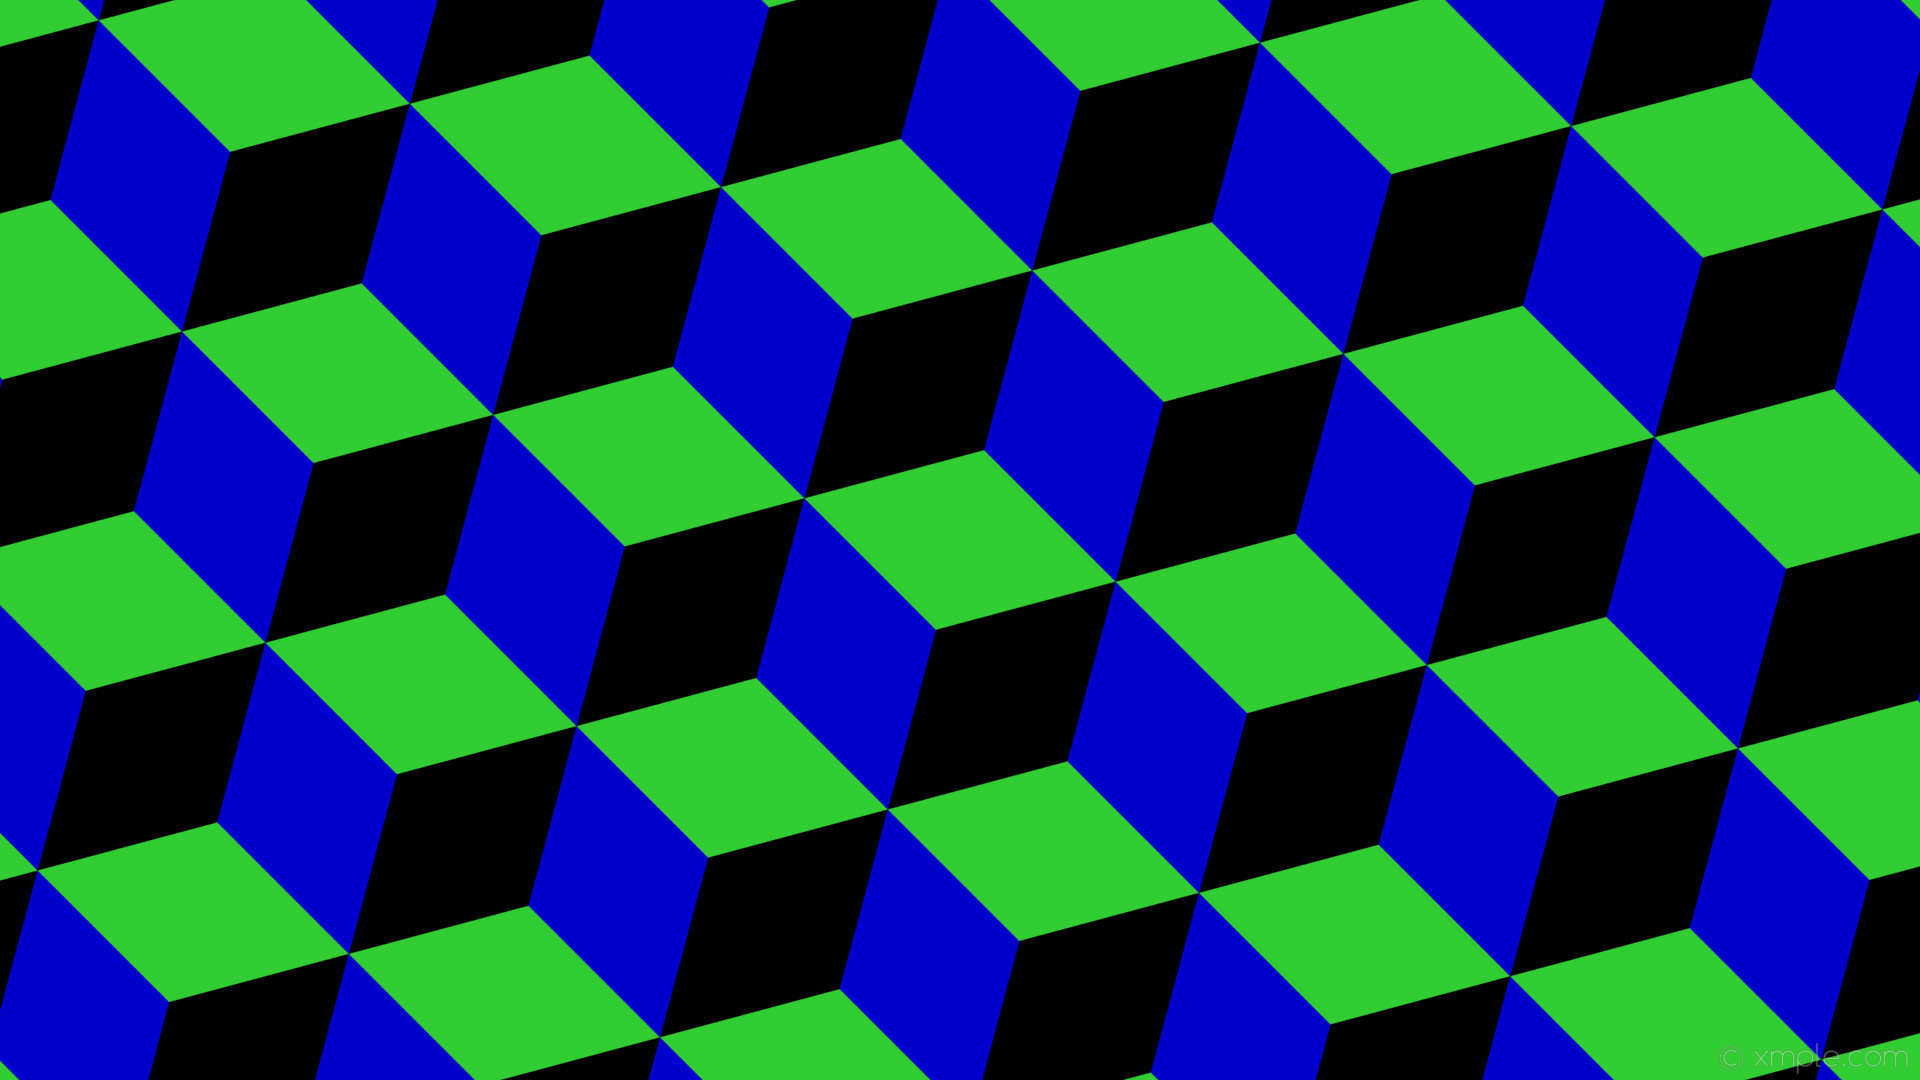 1920x1080 wallpaper green black blue 3d cubes lime green medium blue #32cd32 #0000cd  #000000